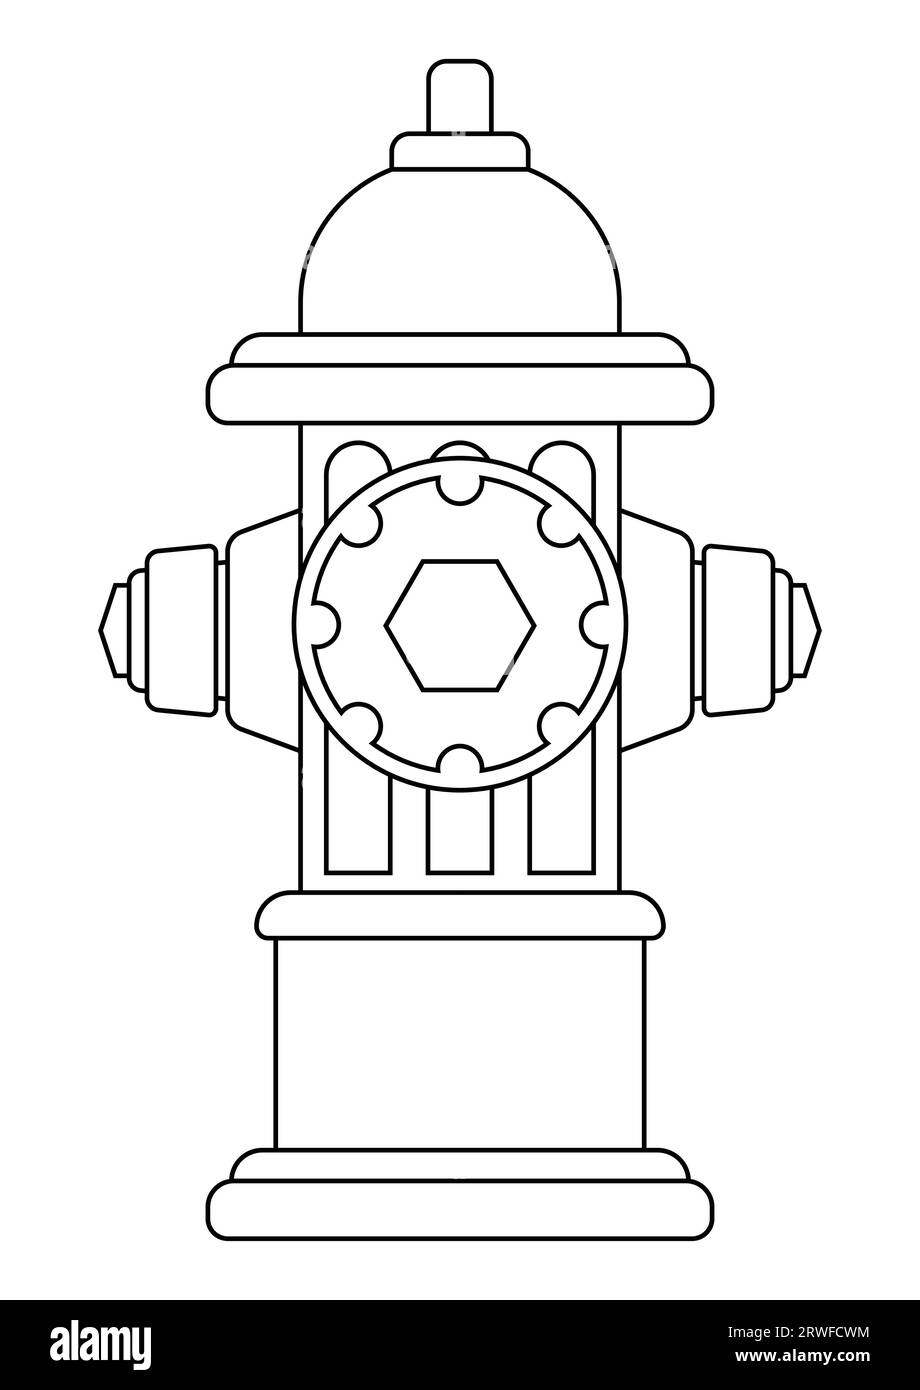 Farbseite des Löschvektors der Hydrantenfeuerwehr, flaches Design, isoliert auf weißem Hintergrund Stock Vektor